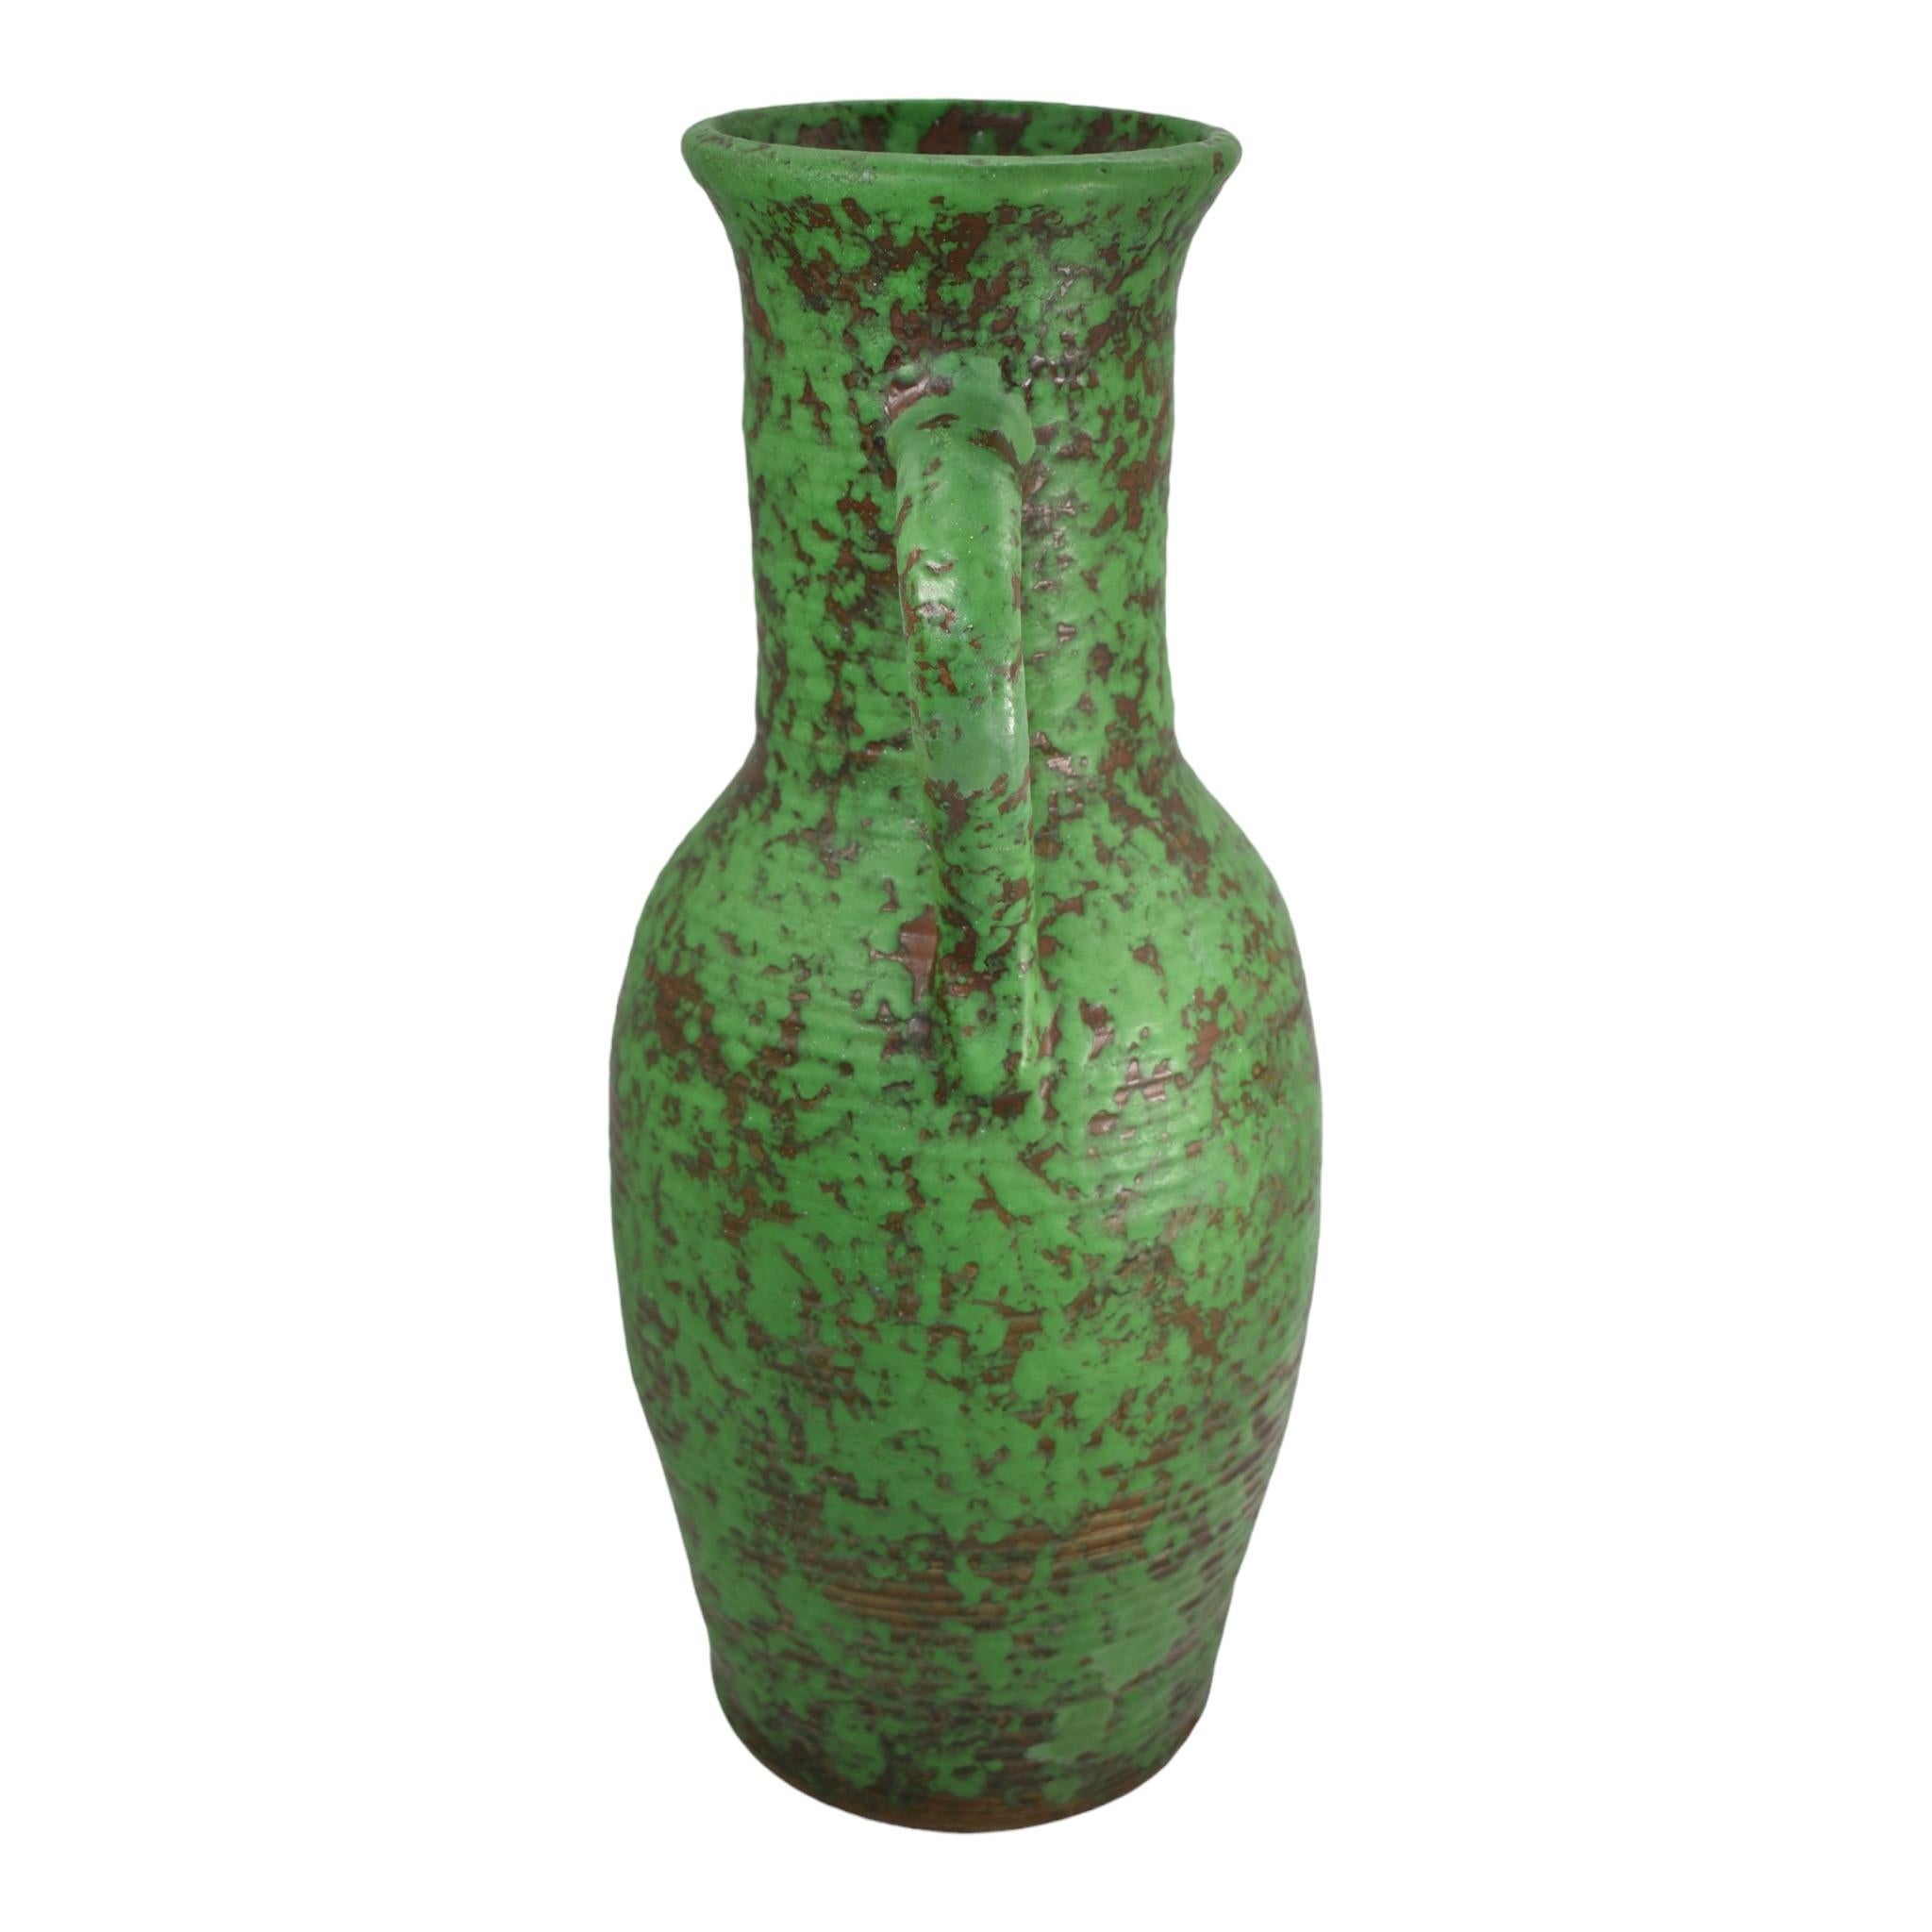 Vase de sol vintage Arts and Crafts Weller Coppertone des années 1920
Une forme massive, côtelée et manipulée, jetée à la main par les artisans, avec une superbe couleur.
La carrosserie a fait l'objet d'une restauration professionnelle qui n'a rien